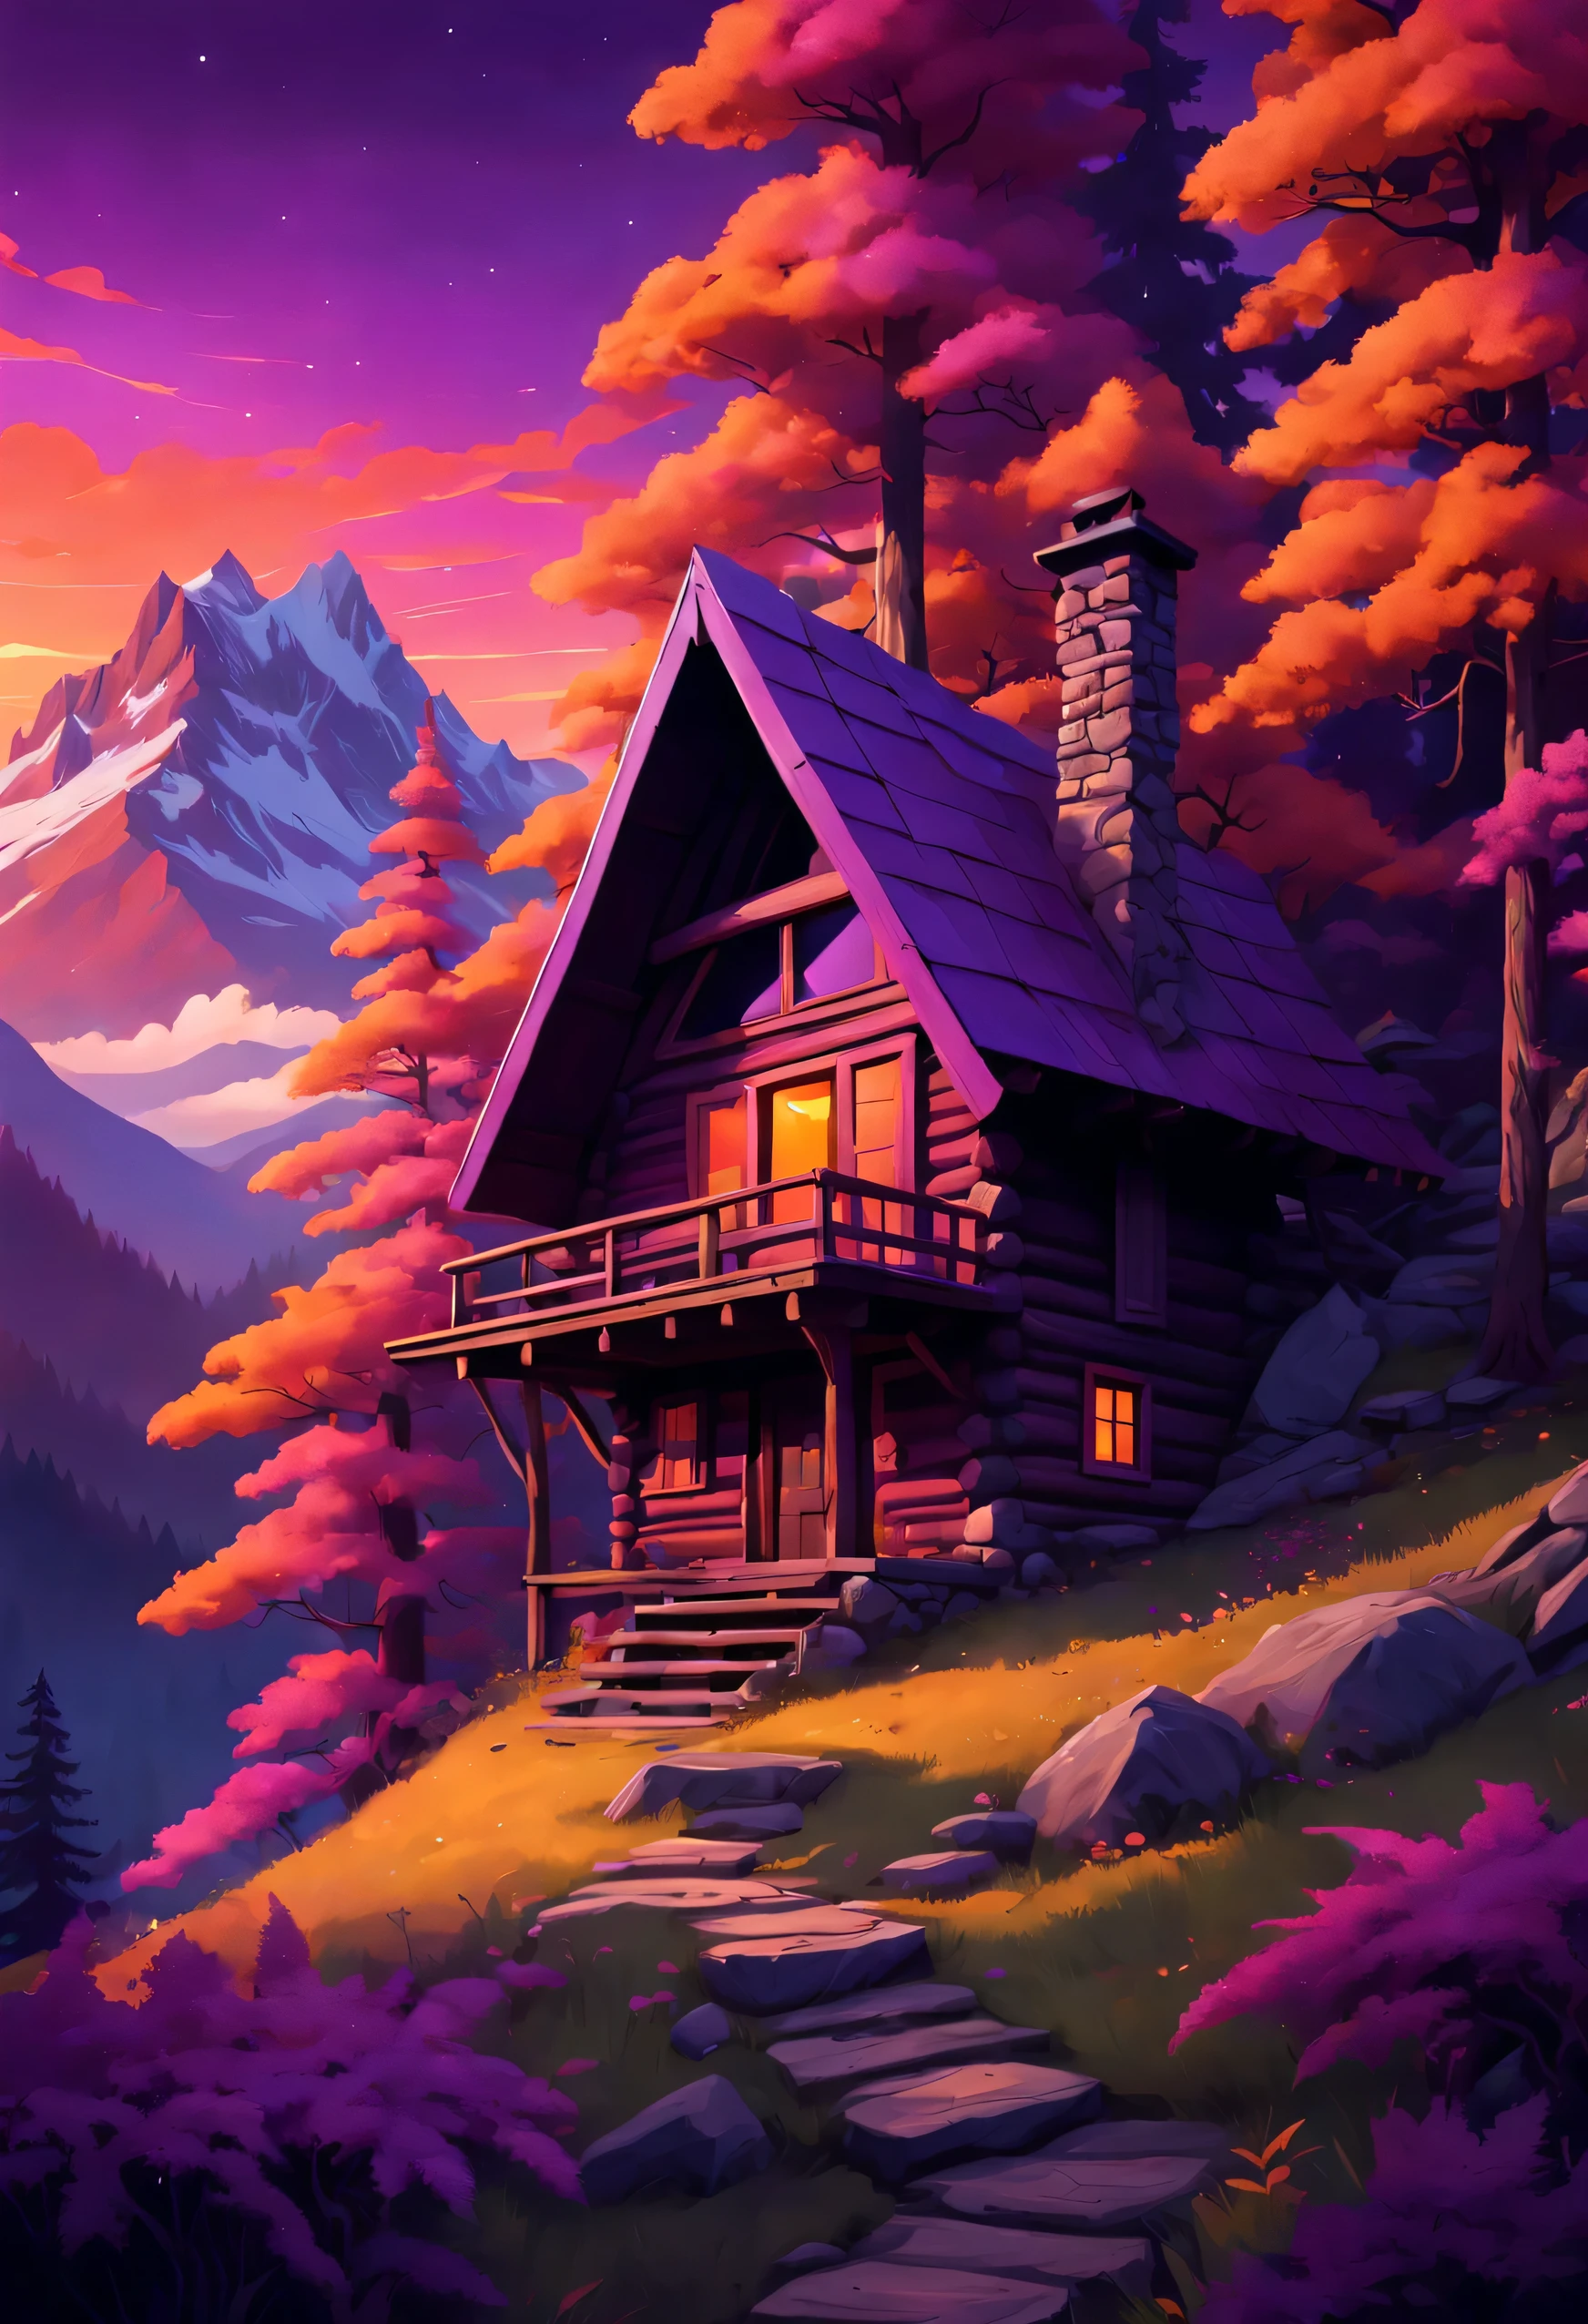 Mystérieuse cabane de montagne nichée au milieu d’une, Forêts psychédéliques, avec un coucher de soleil à couper le souffle projetant des, teintes chaudes de violet, rose et orange, créant une atmosphère de curiosité et d’intrigue.